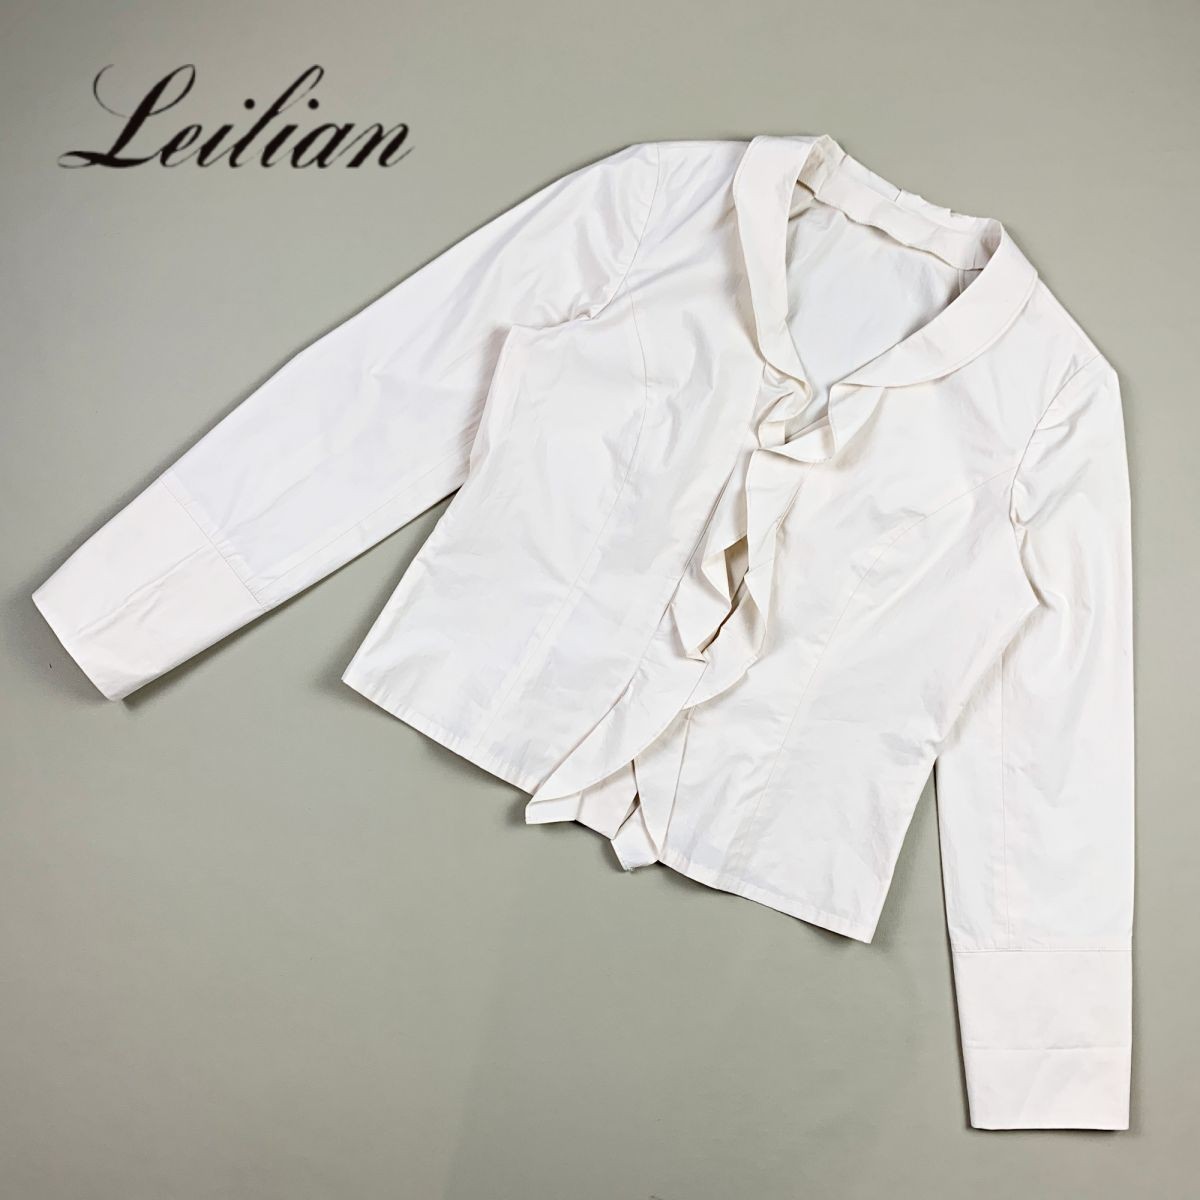 Leilian レリアン 襟フリル 長袖ブラウスシャツ レディース トップス 白 アイボリー サイズ9*HB495_画像1